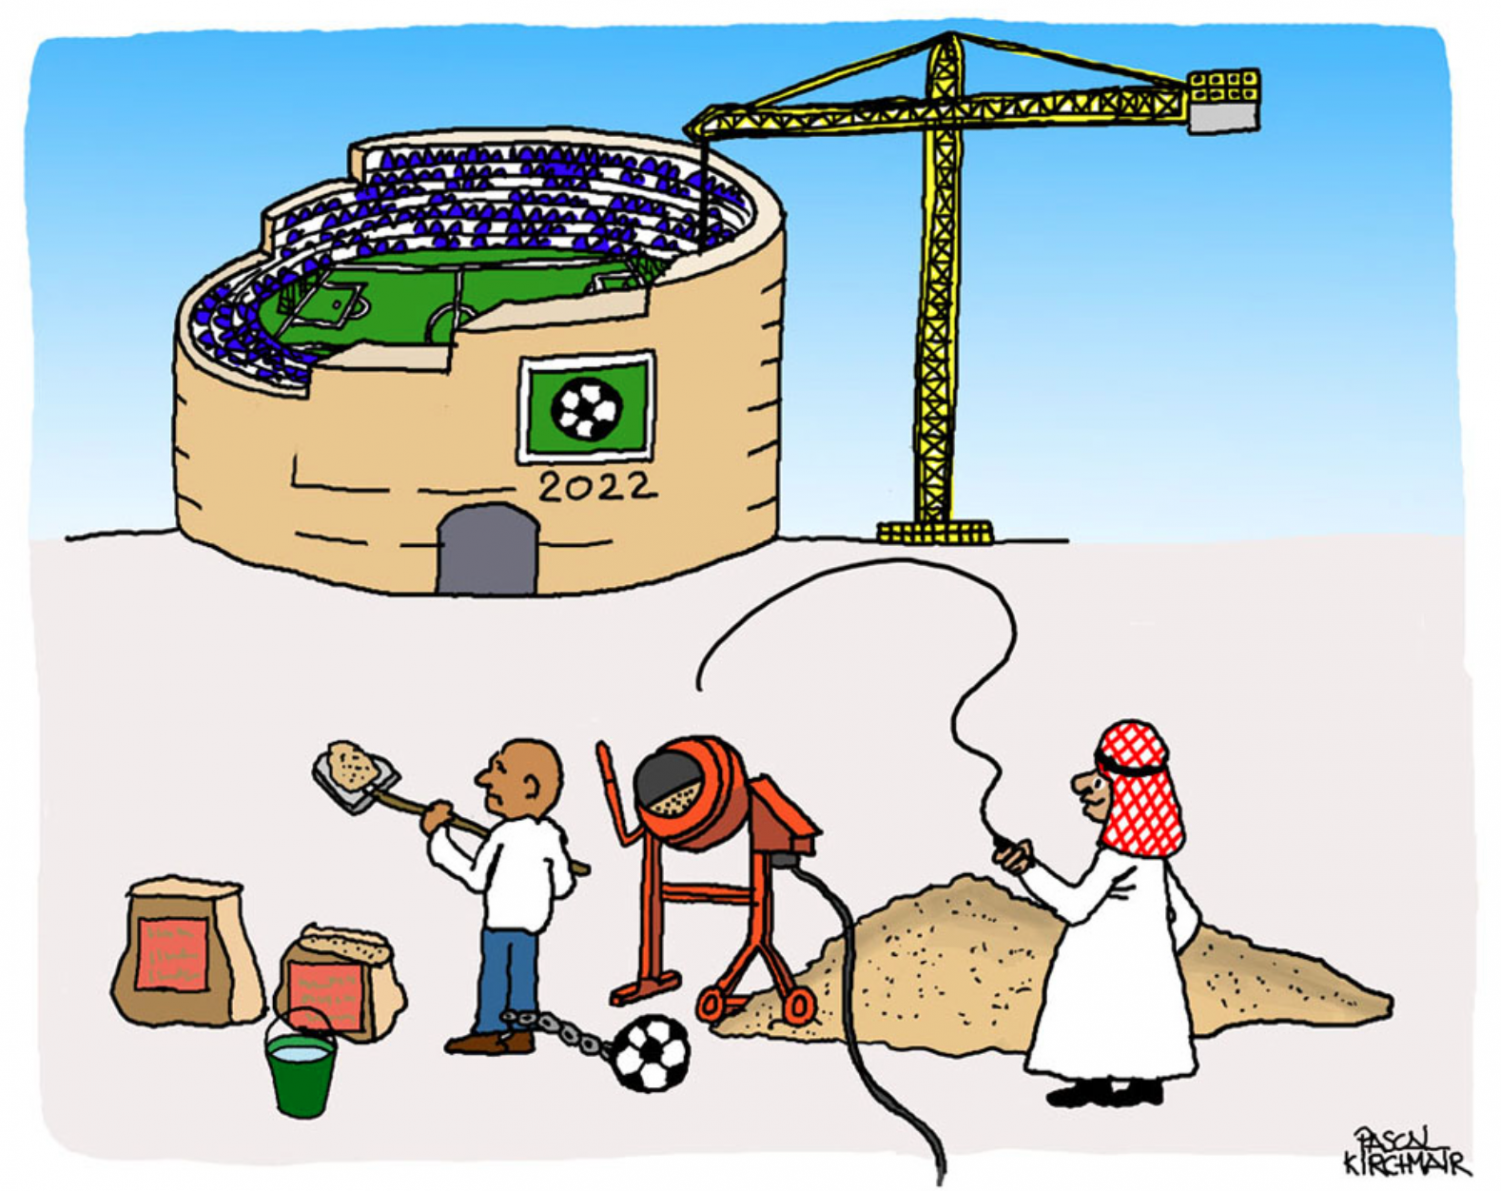 2022 Qatar World Cup: Sports, Politics & Human Rights